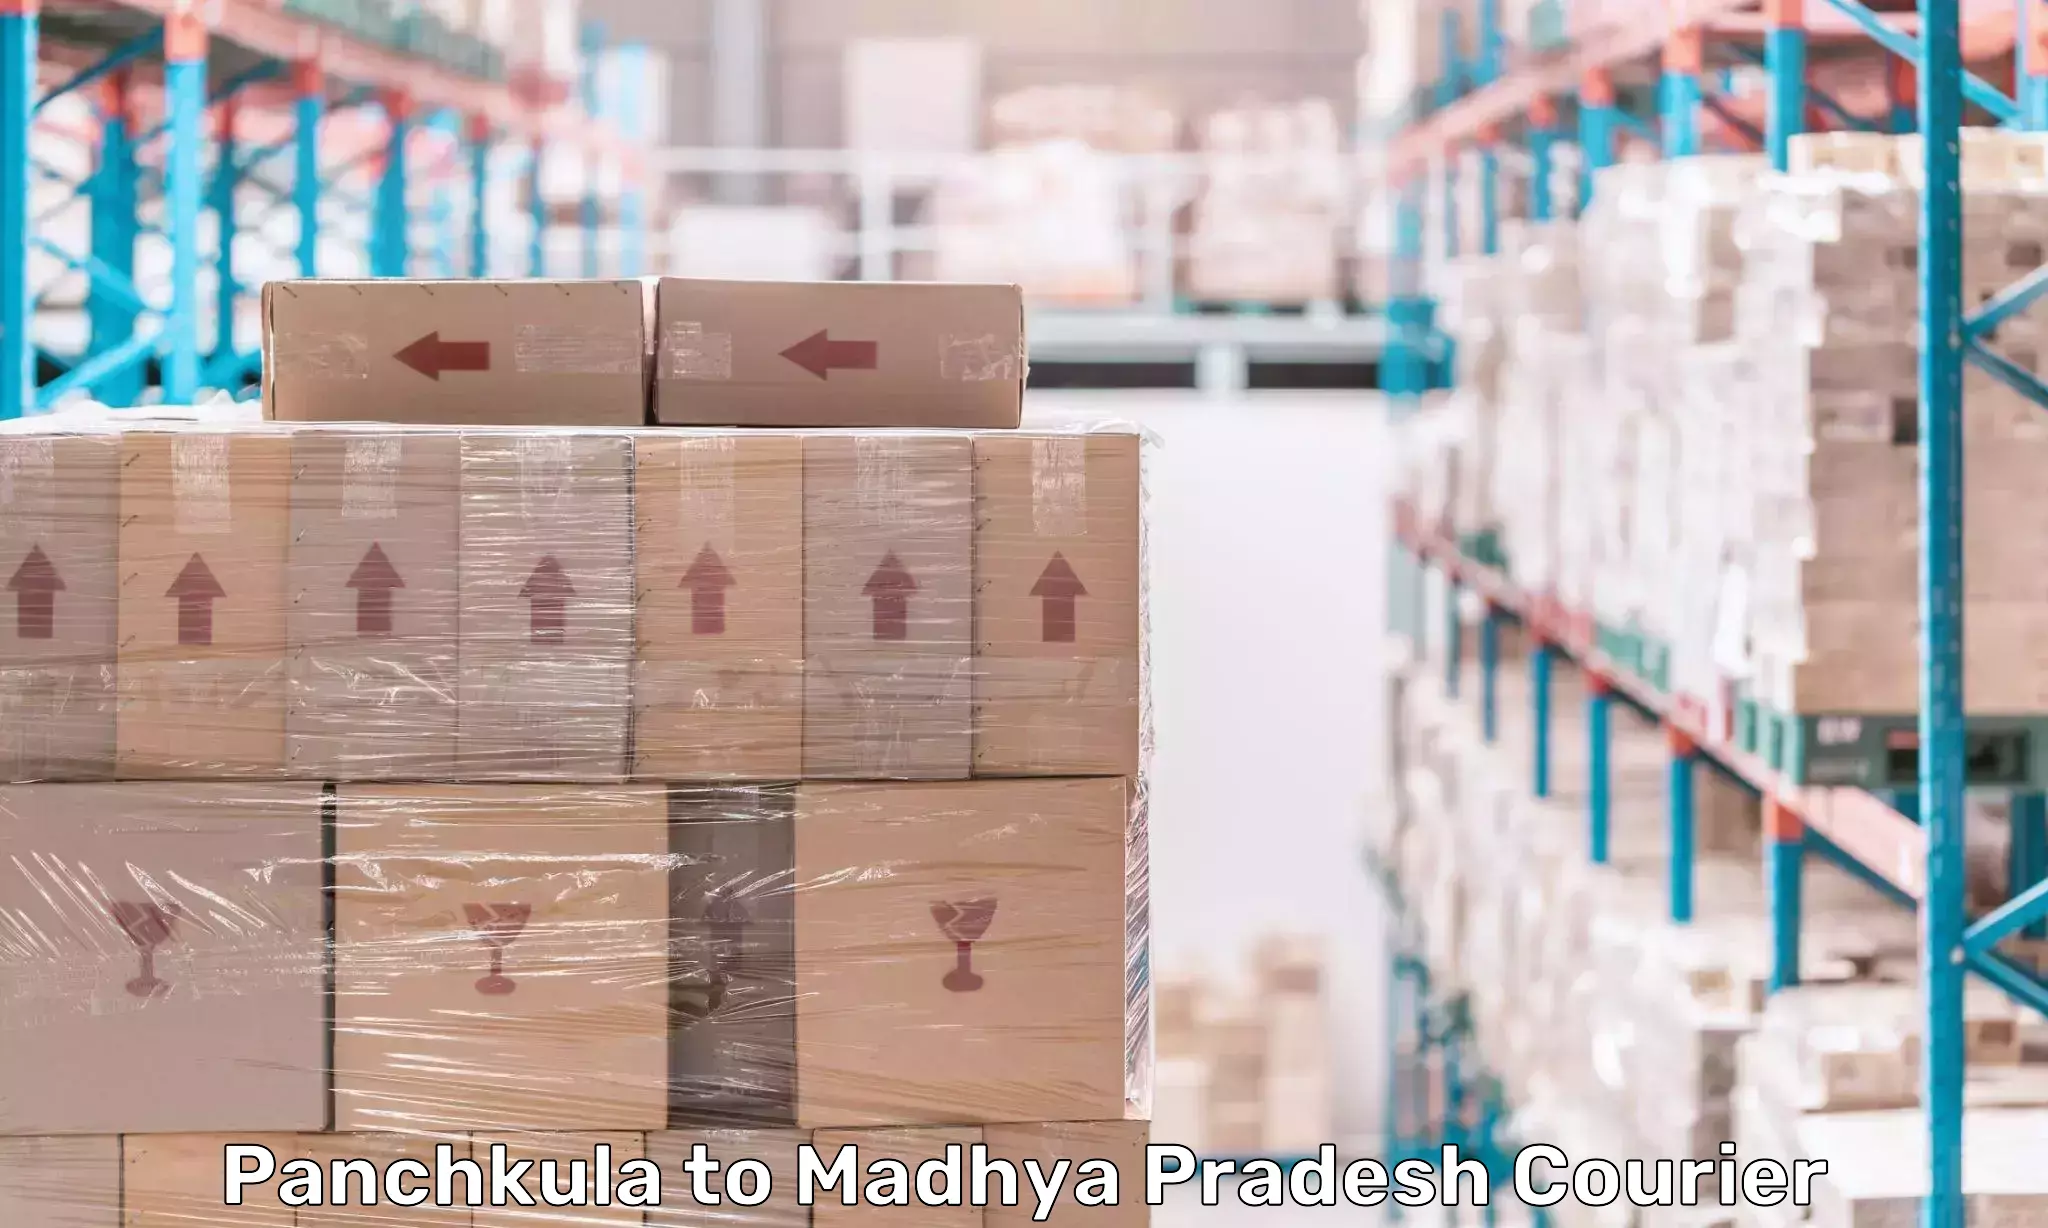 High-capacity courier solutions Panchkula to Maheshwar